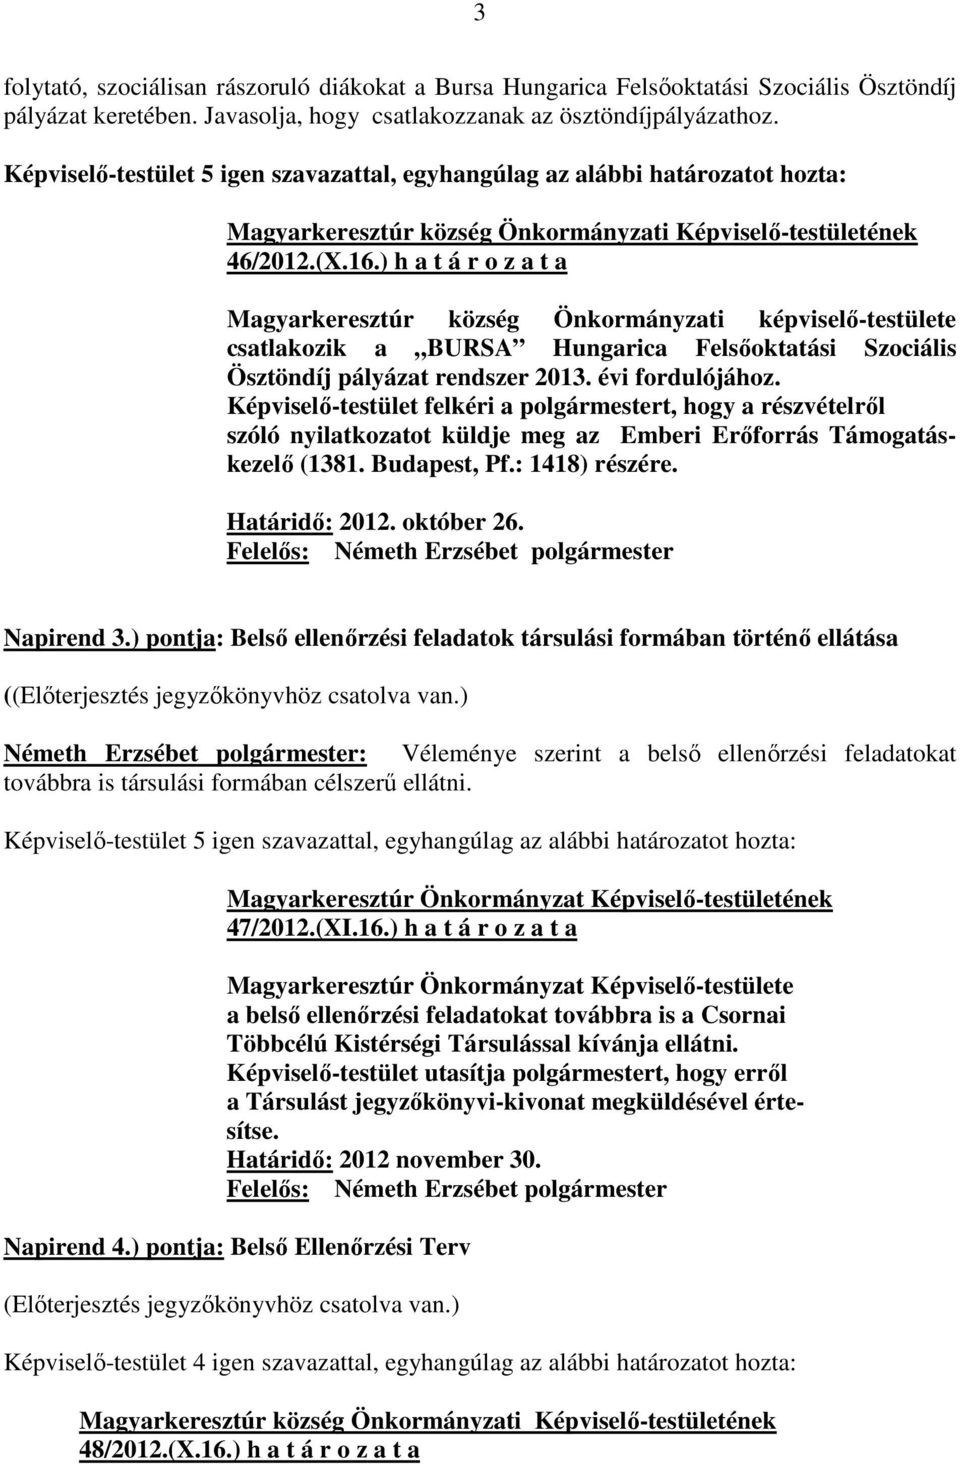 Képviselő-testület felkéri a polgármestert, hogy a részvételről szóló nyilatkozatot küldje meg az Emberi Erőforrás Támogatáskezelő (1381. Budapest, Pf.: 1418) részére. Határidő: 2012. október 26.